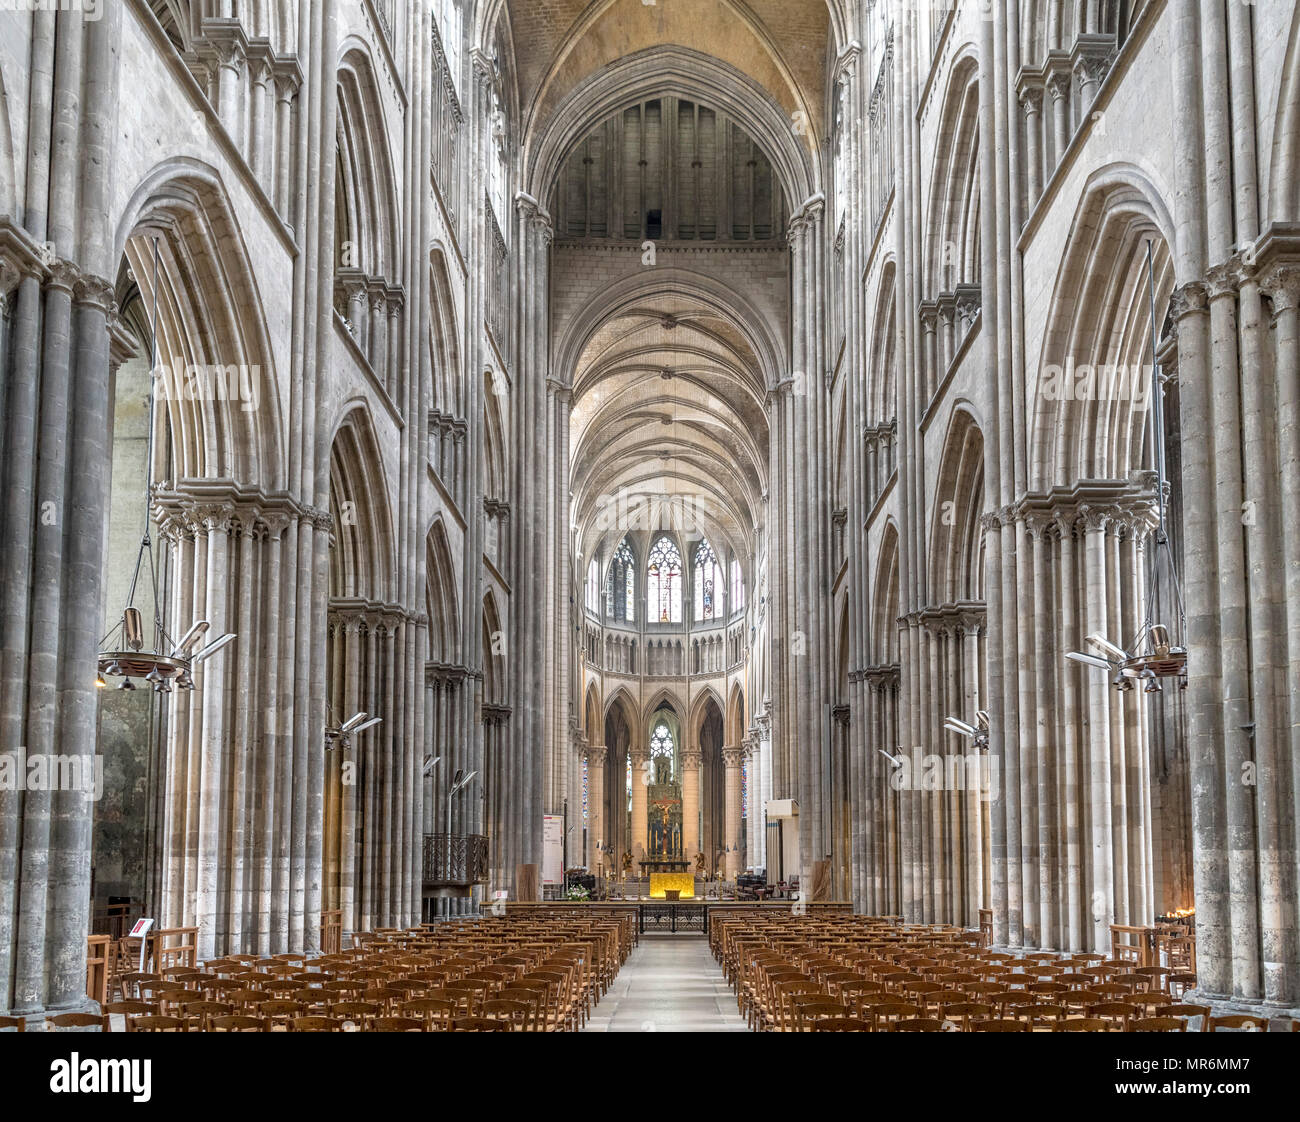 Interior of Rouen Cathedral (Cathedrale primatiale Notre-Dame de l'Assomption de Rouen), Rouen, Normandy, France Stock Photo